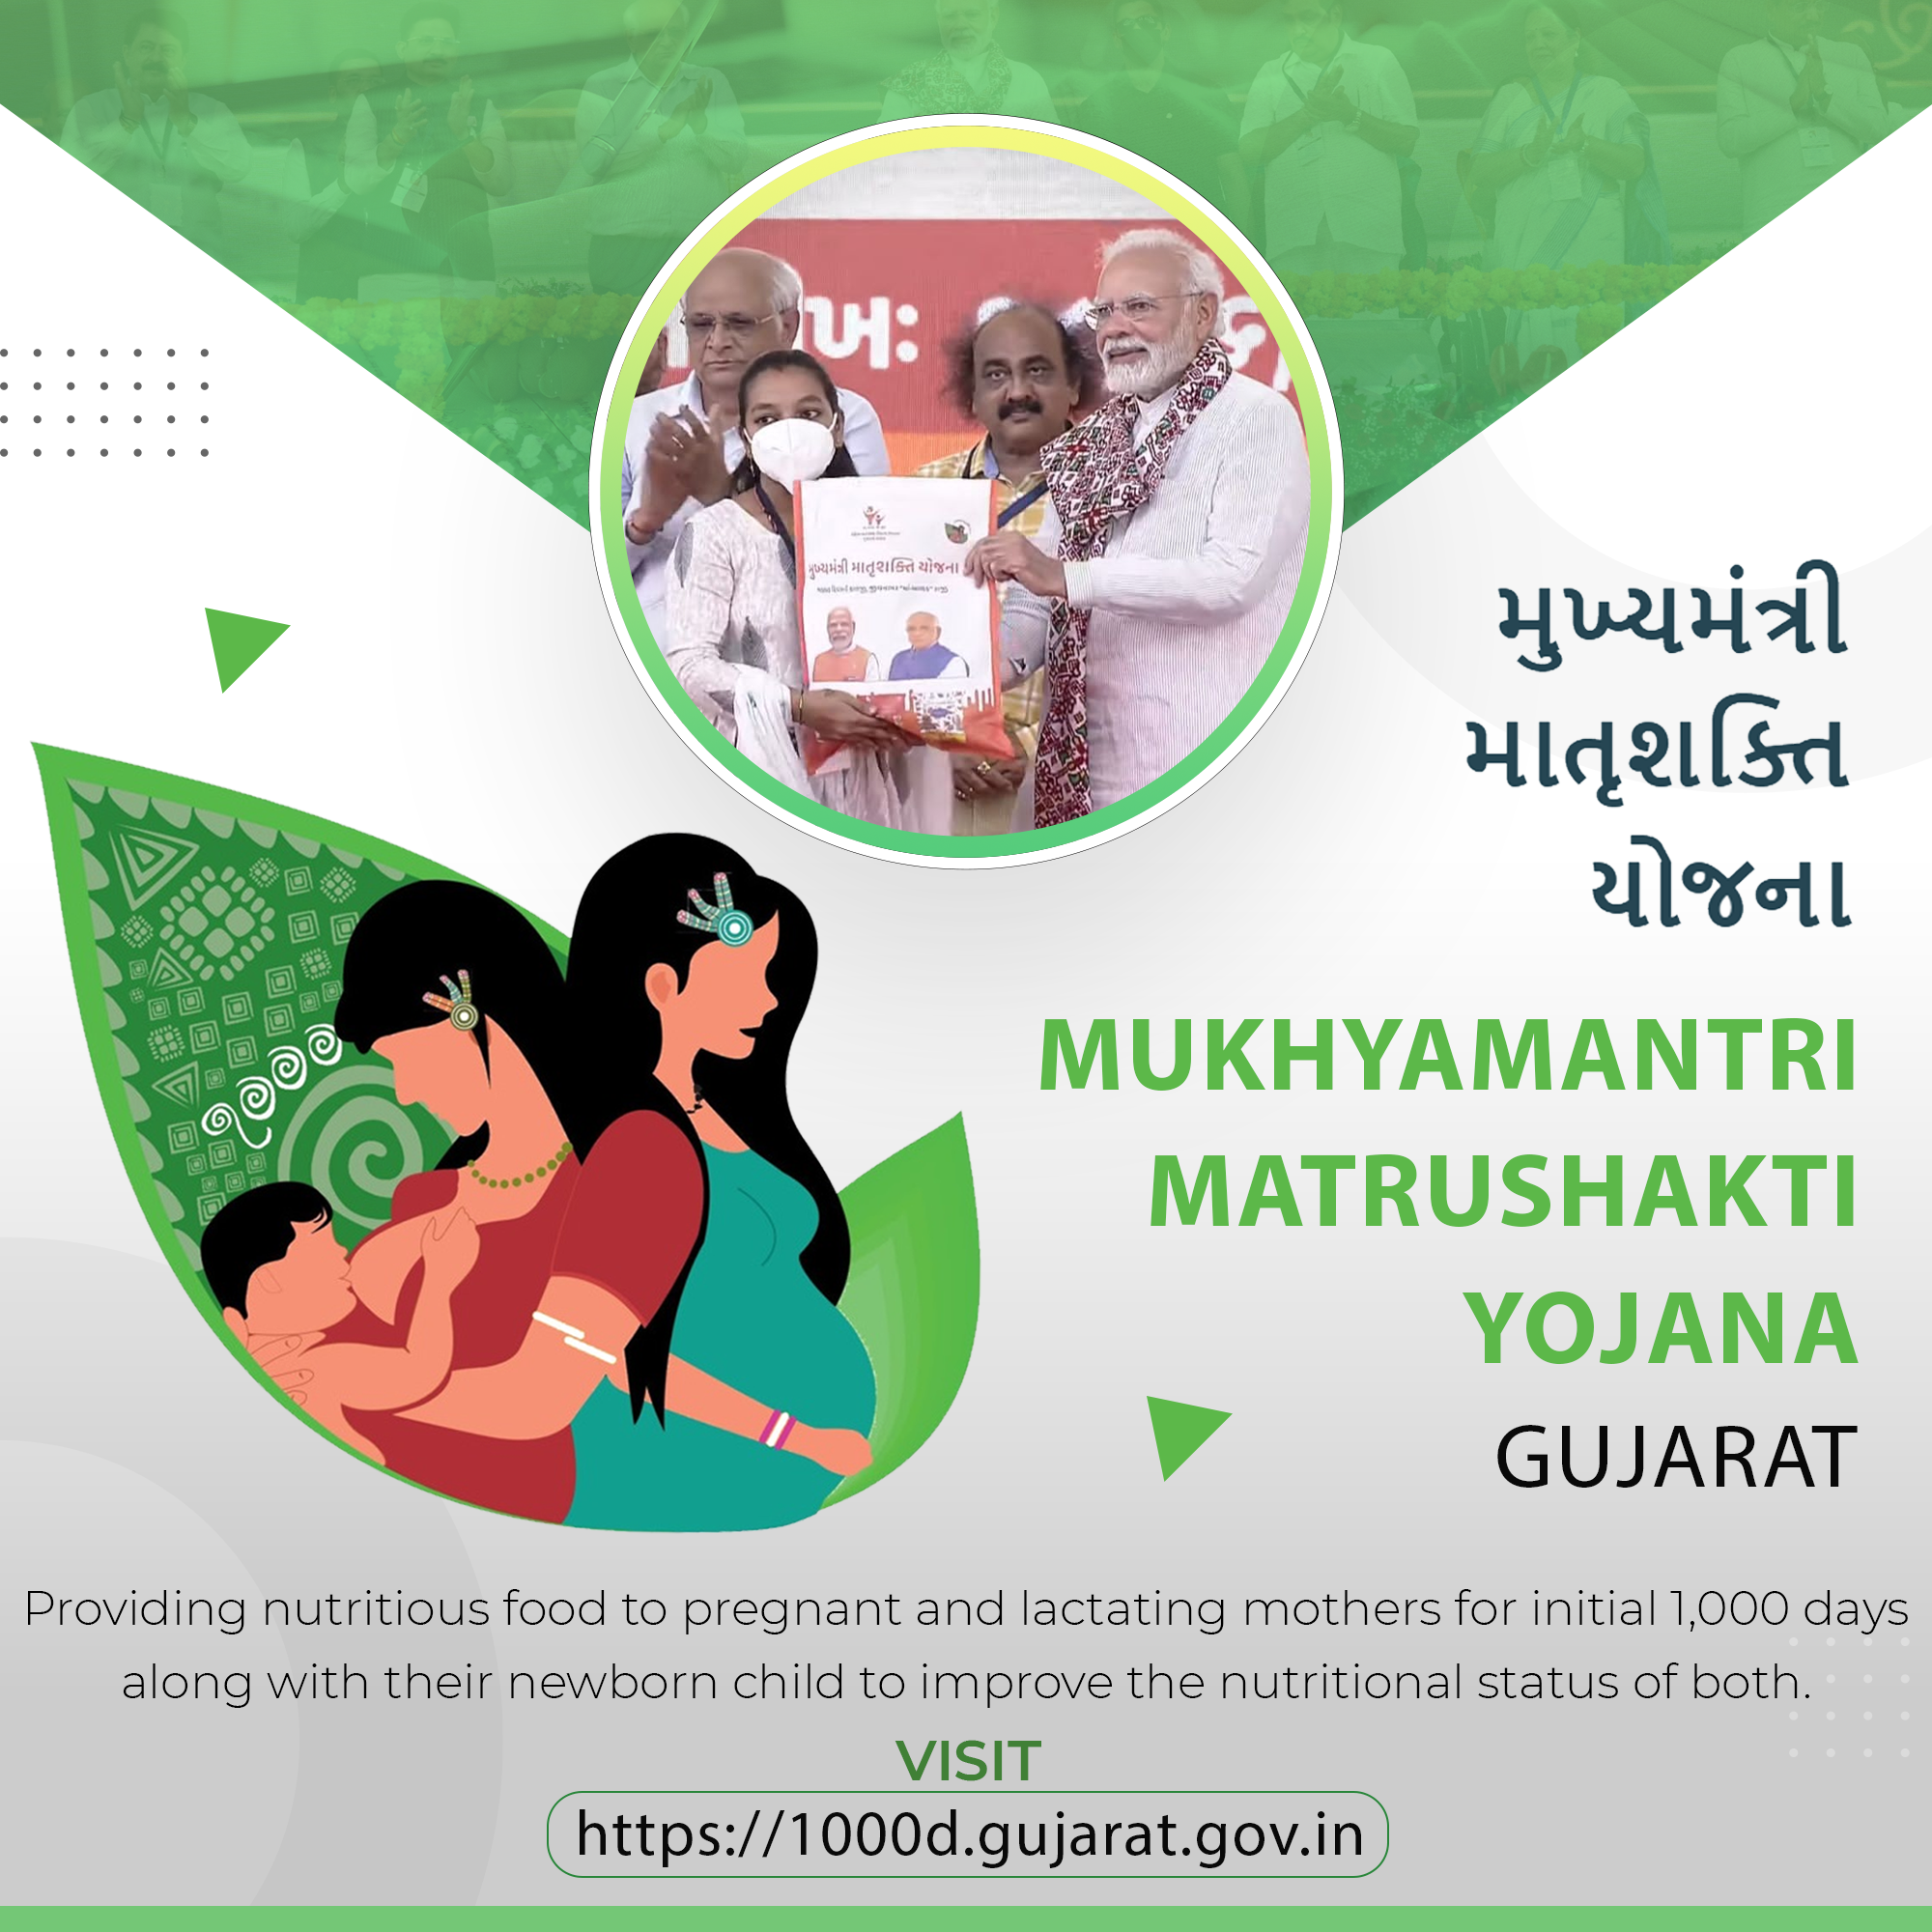 Image of गुजरात के महिला एवं बाल विकास विभाग की ‘मुख्यमंत्री मातृशक्ति योजना (एमएमवाई)’ के लिए एक एमएमवाई एप्लीकेशन।